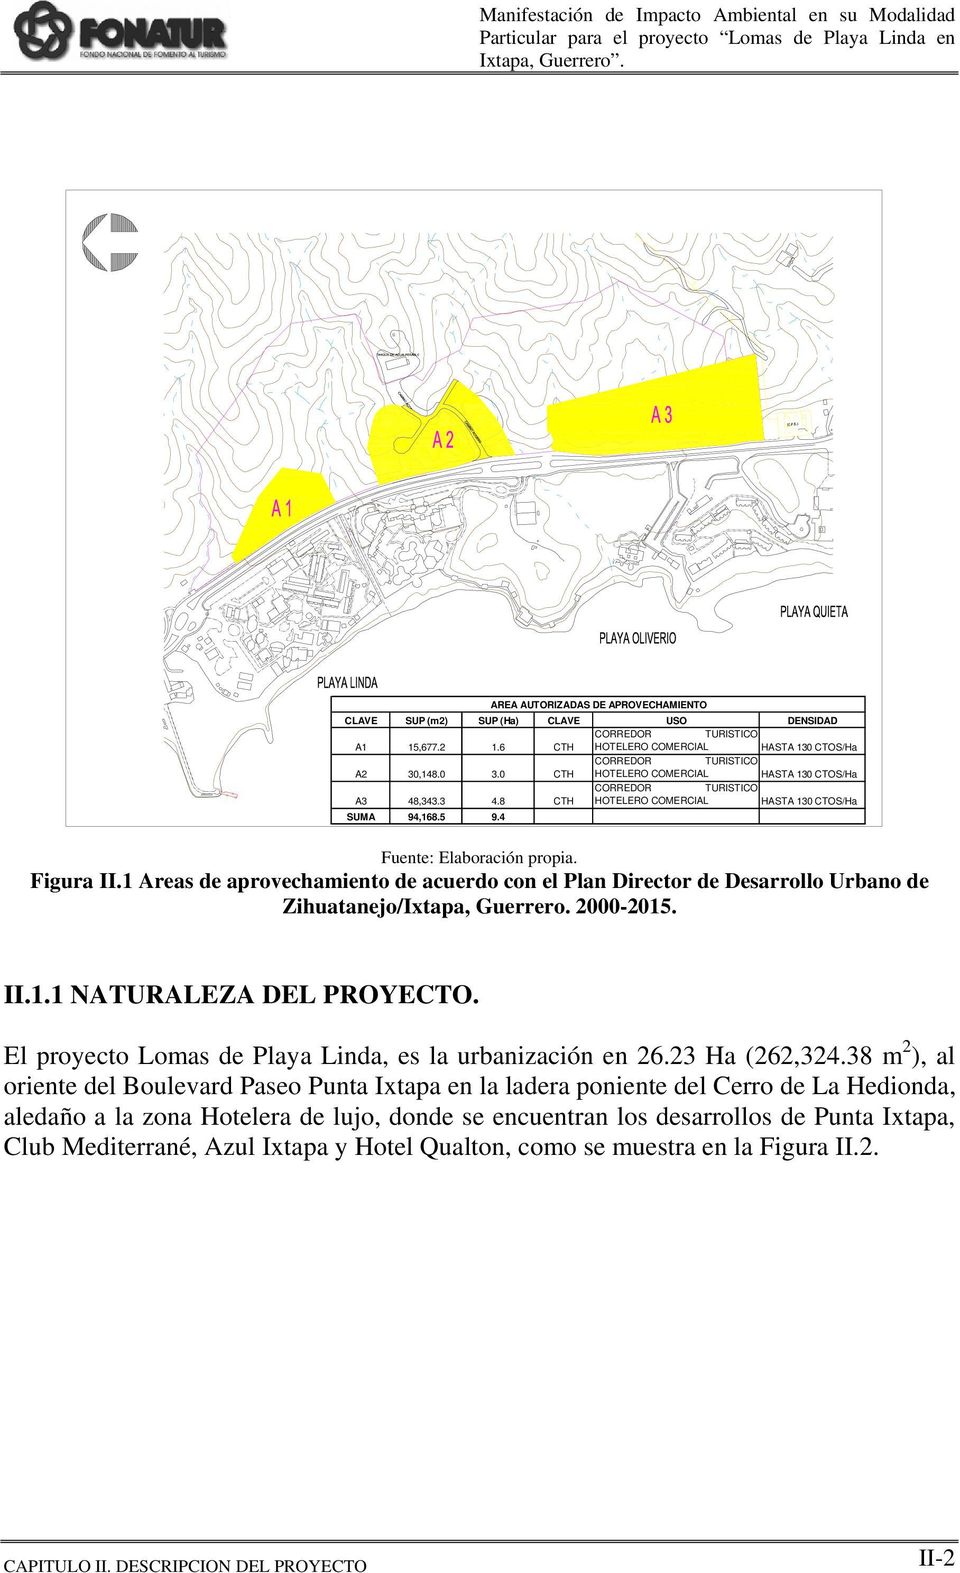 1 Areas de aprovechamiento de acuerdo con el Plan Director de Desarrollo Urbano de Zihuatanejo/Ixtapa, Guerrero. 2000-2015. II.1.1 NATURALEZA DEL PROYECTO.